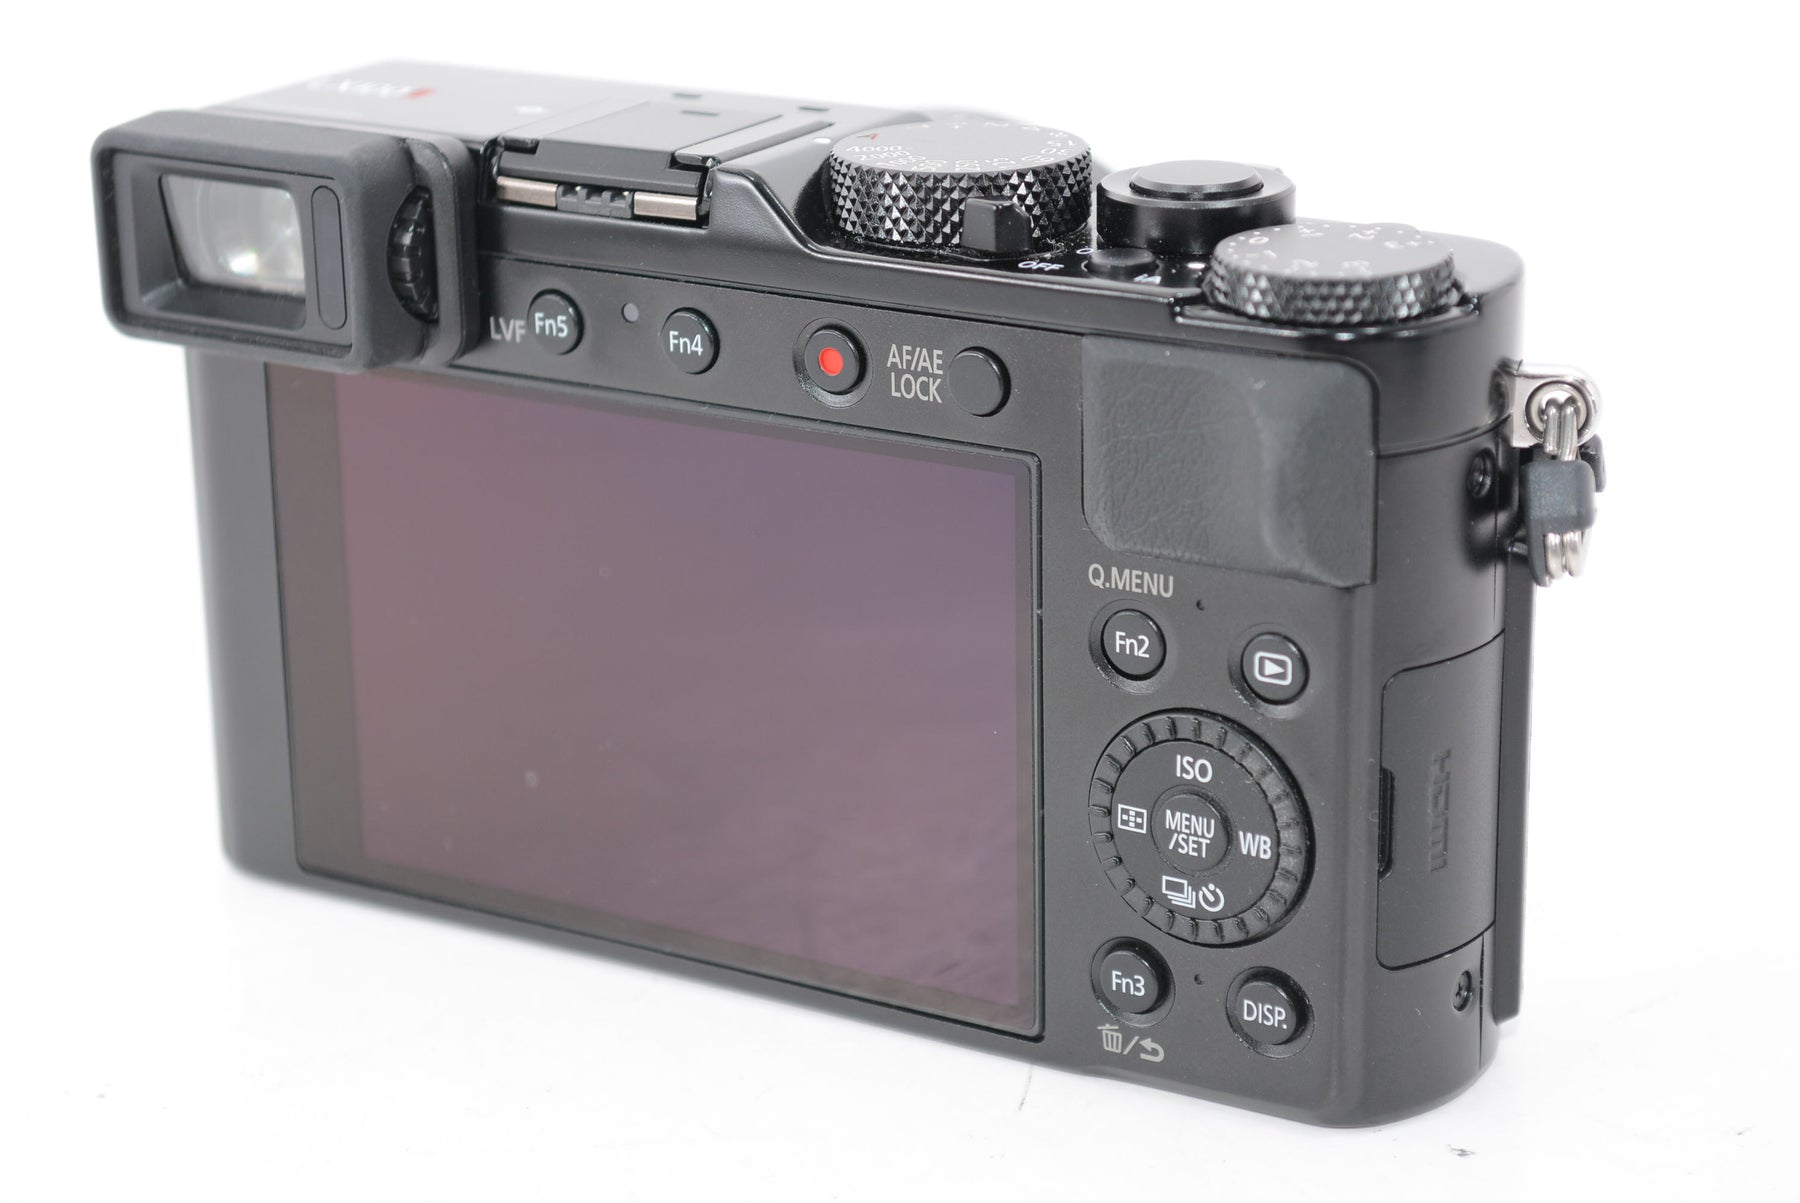 パナソニック コンパクトデジタルカメラ ルミックス  DC-LX100M2